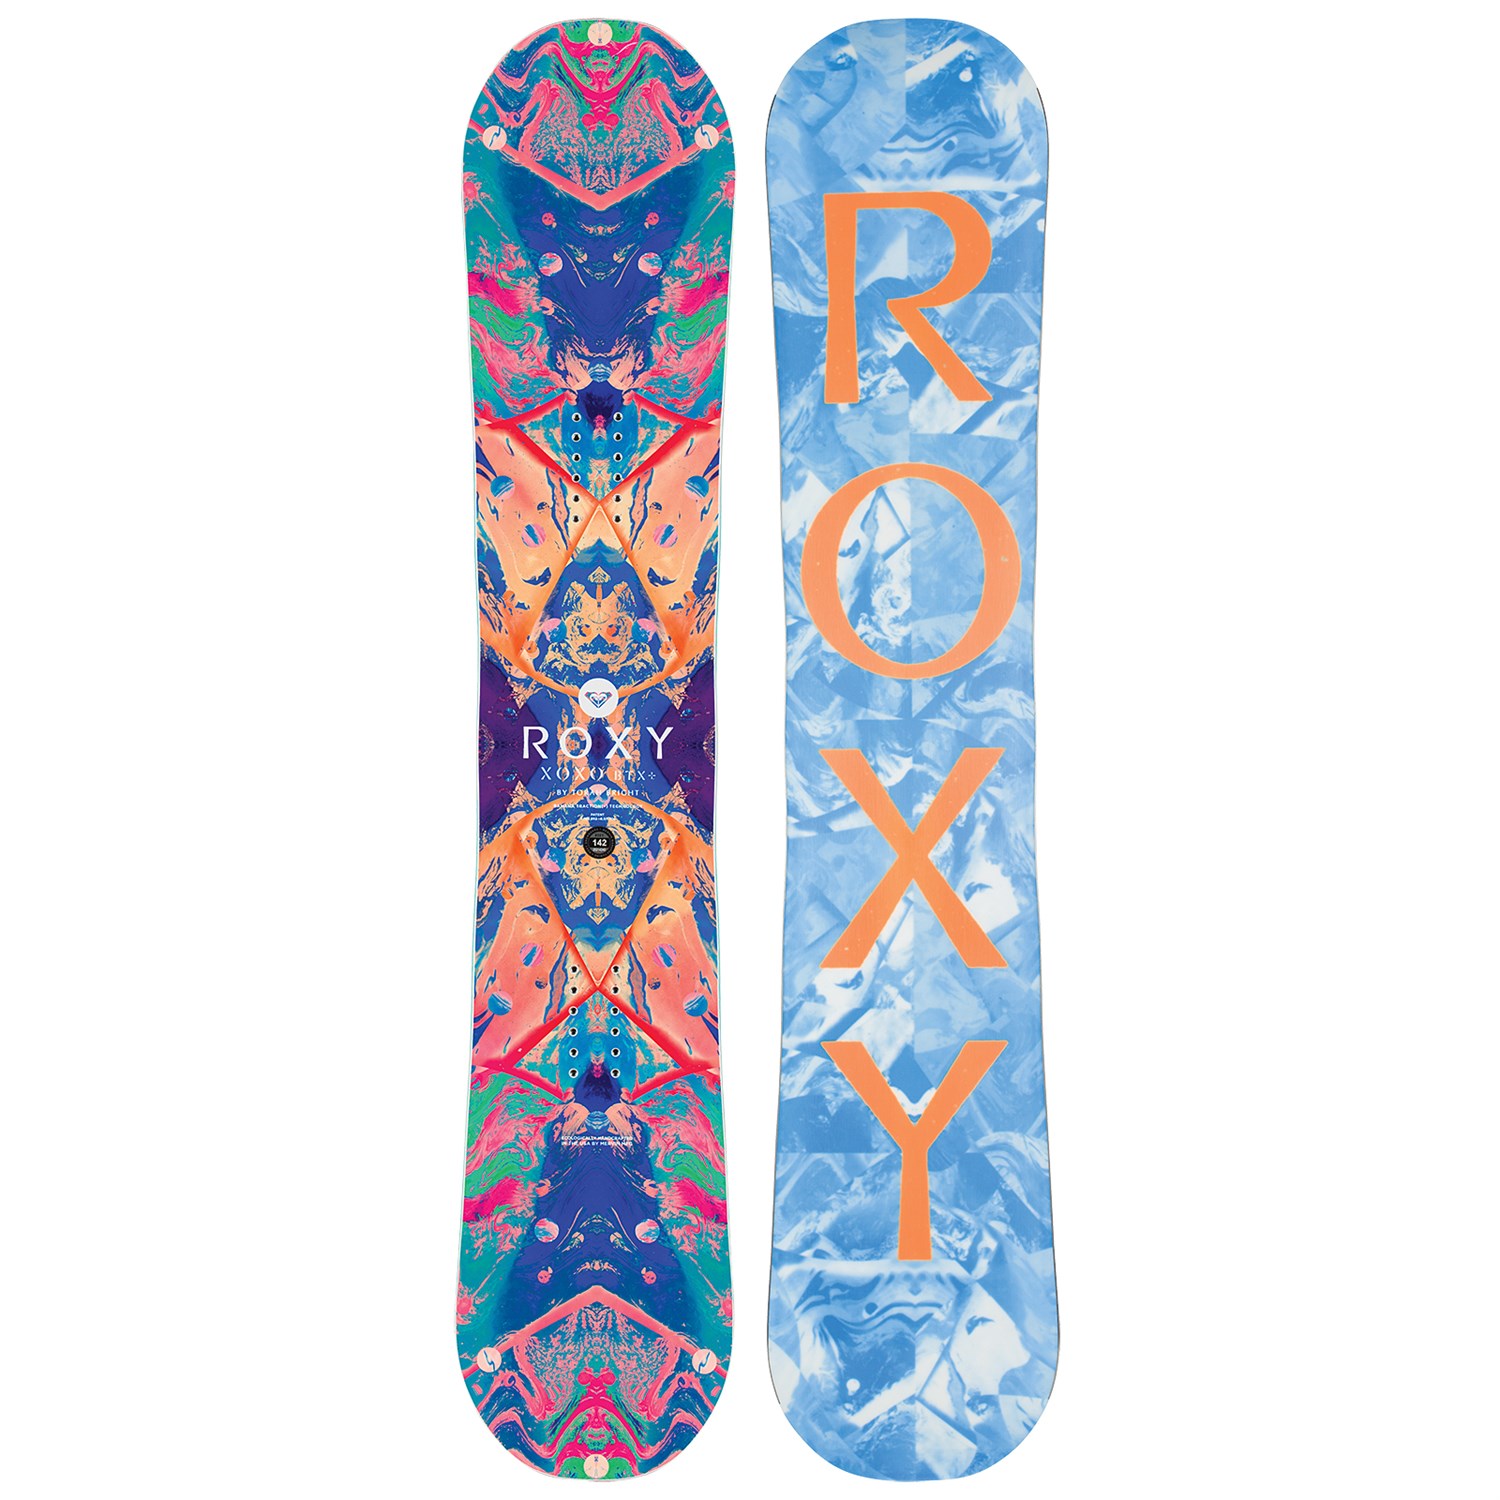 Verval Winkelcentrum breng de actie Roxy XOXO Flowers Snowboard - 2016/2017. The Best Women's Snowboard Designs  - SnowSista